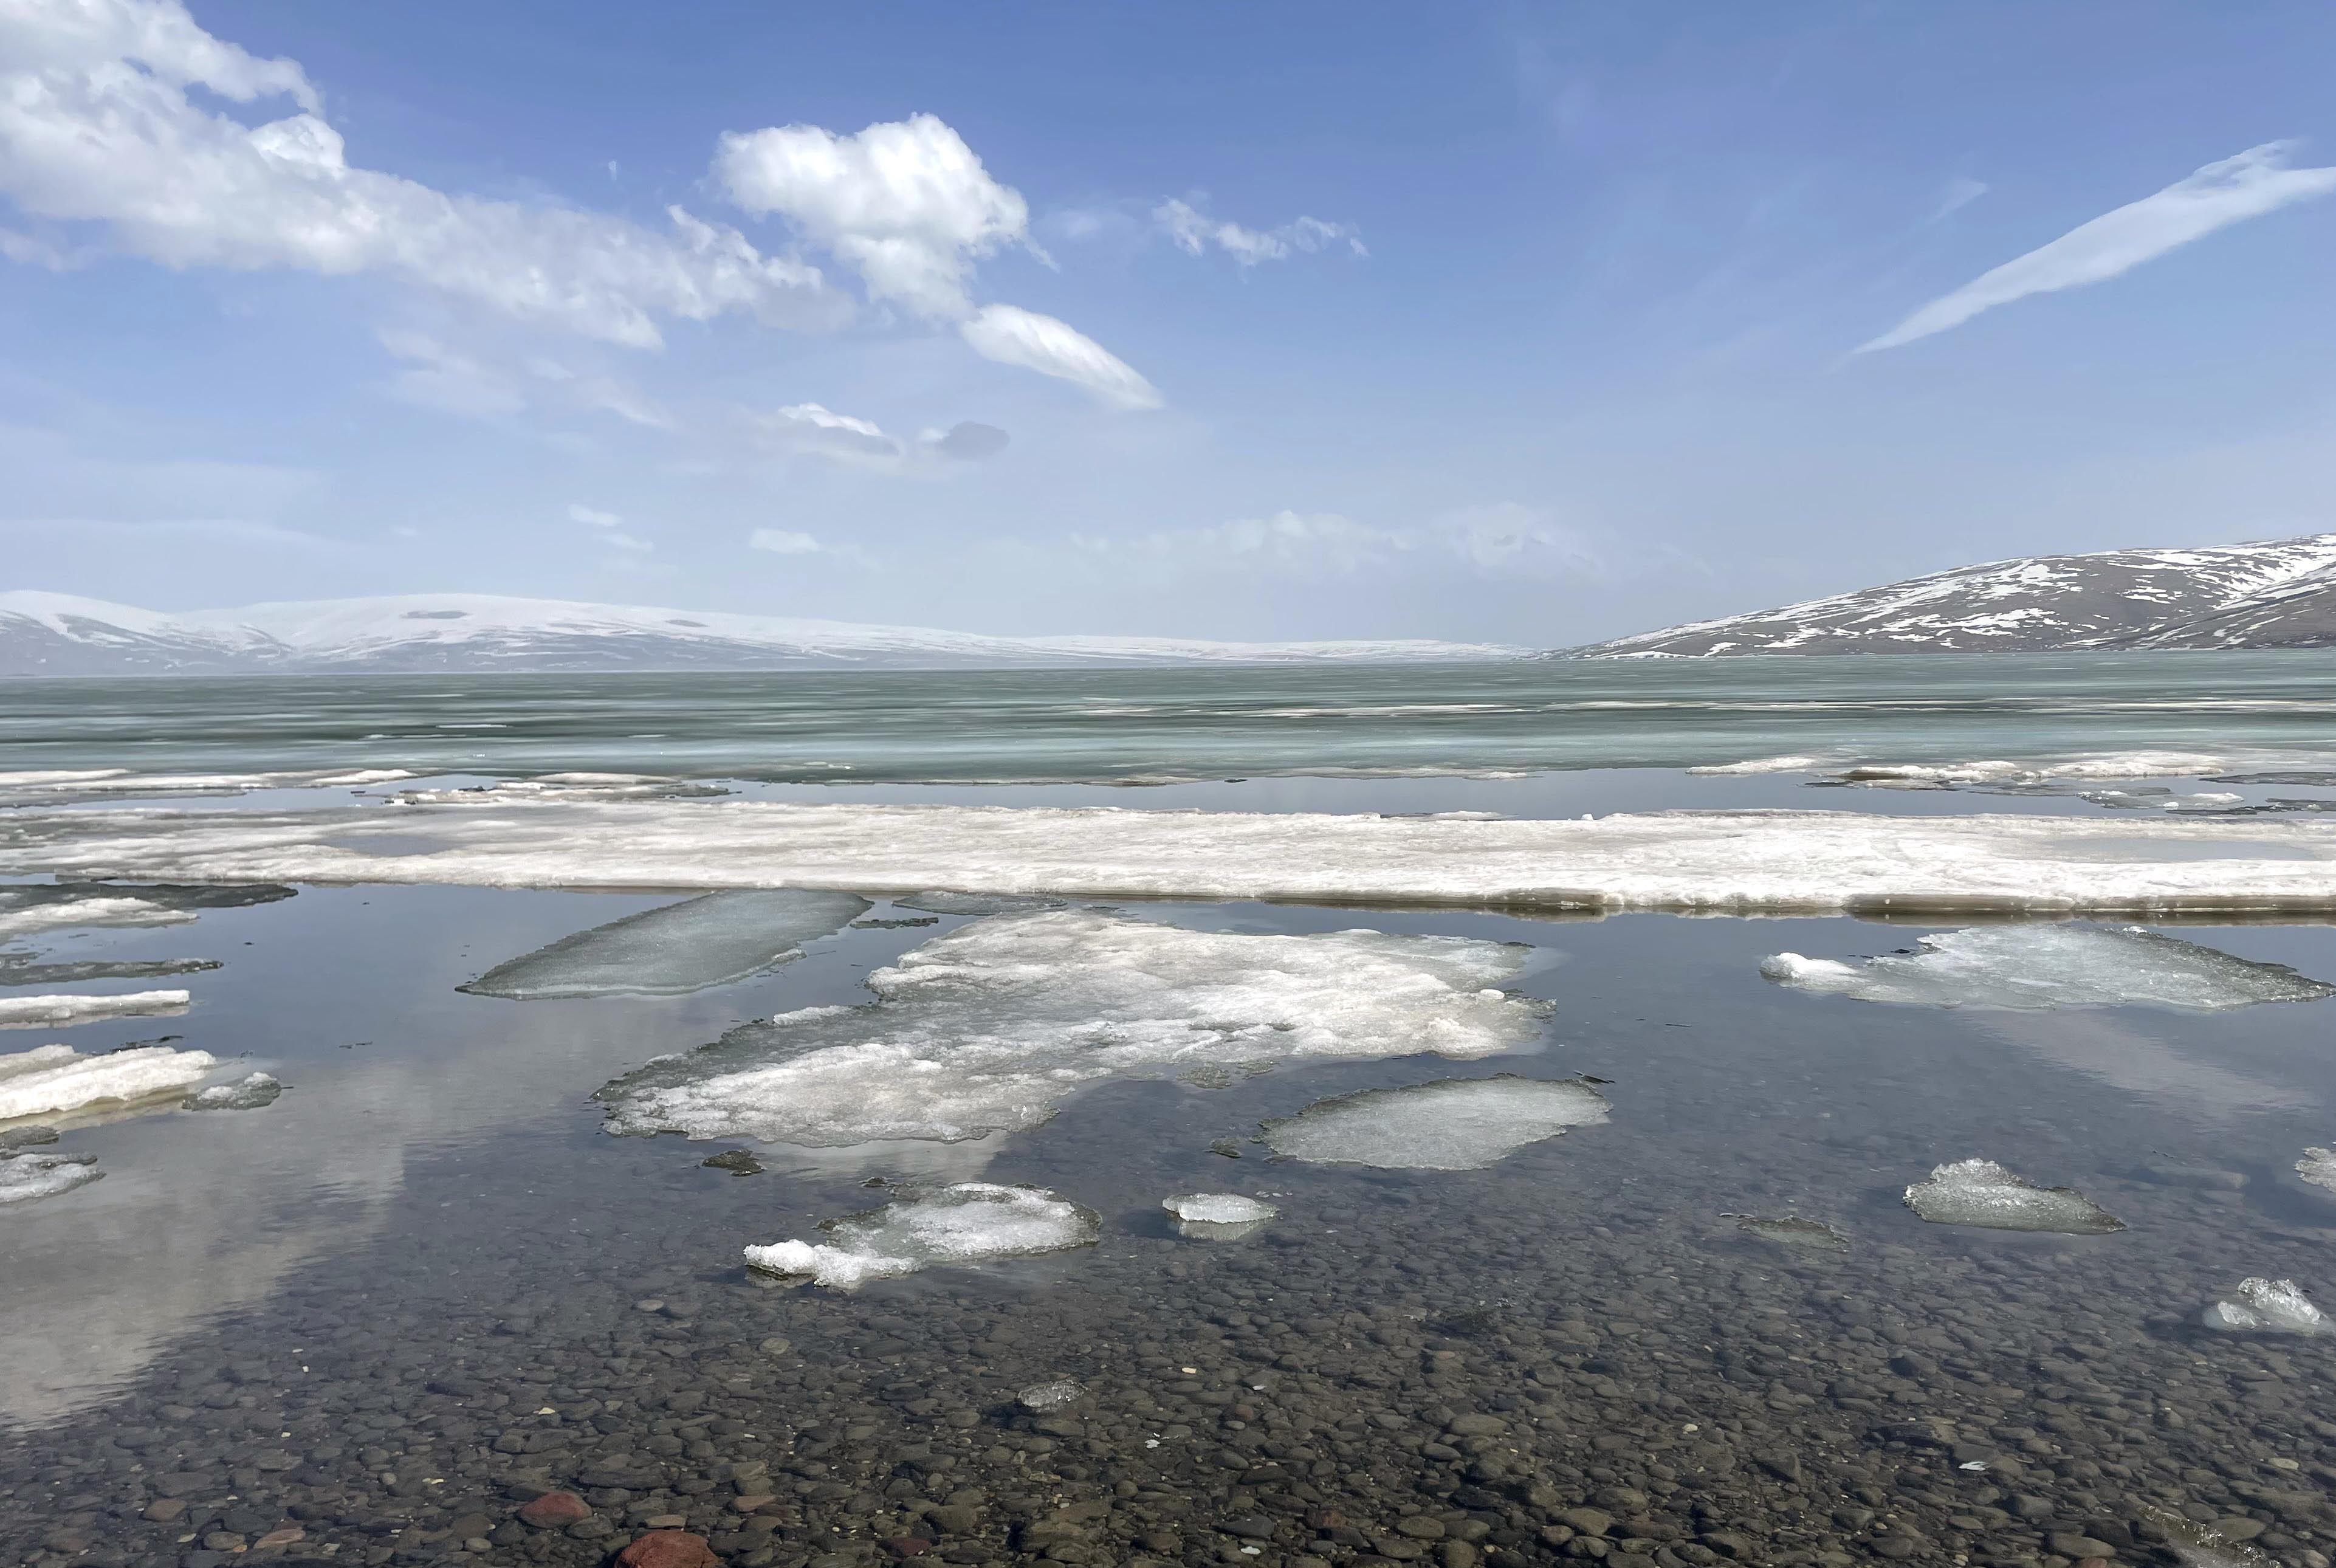 Çıldır Gölü'nü kaplayan buz tabakası erimeye başladı